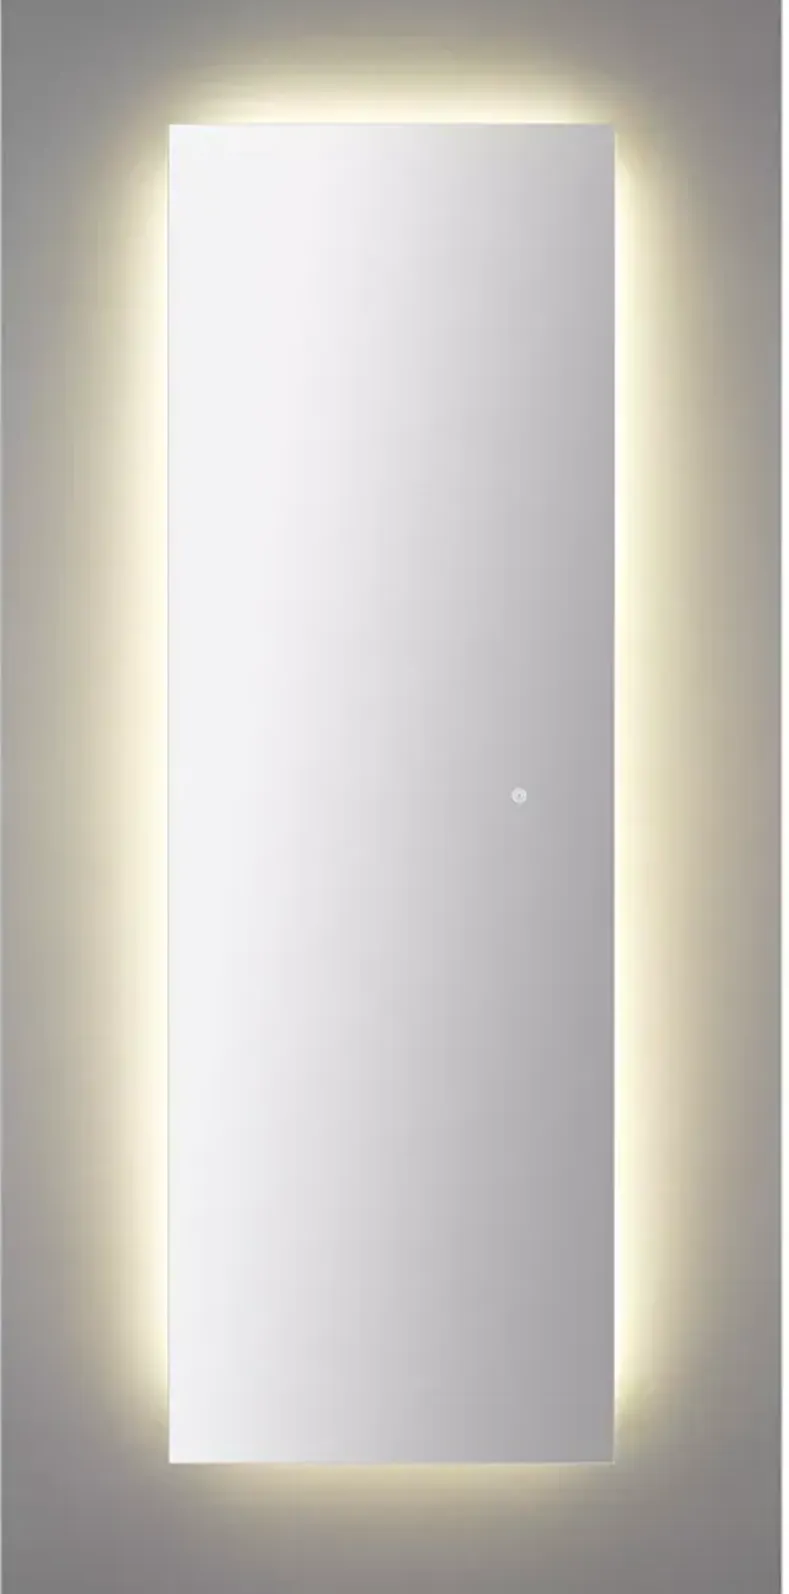 Ren-Wil Bexley LED Mirror